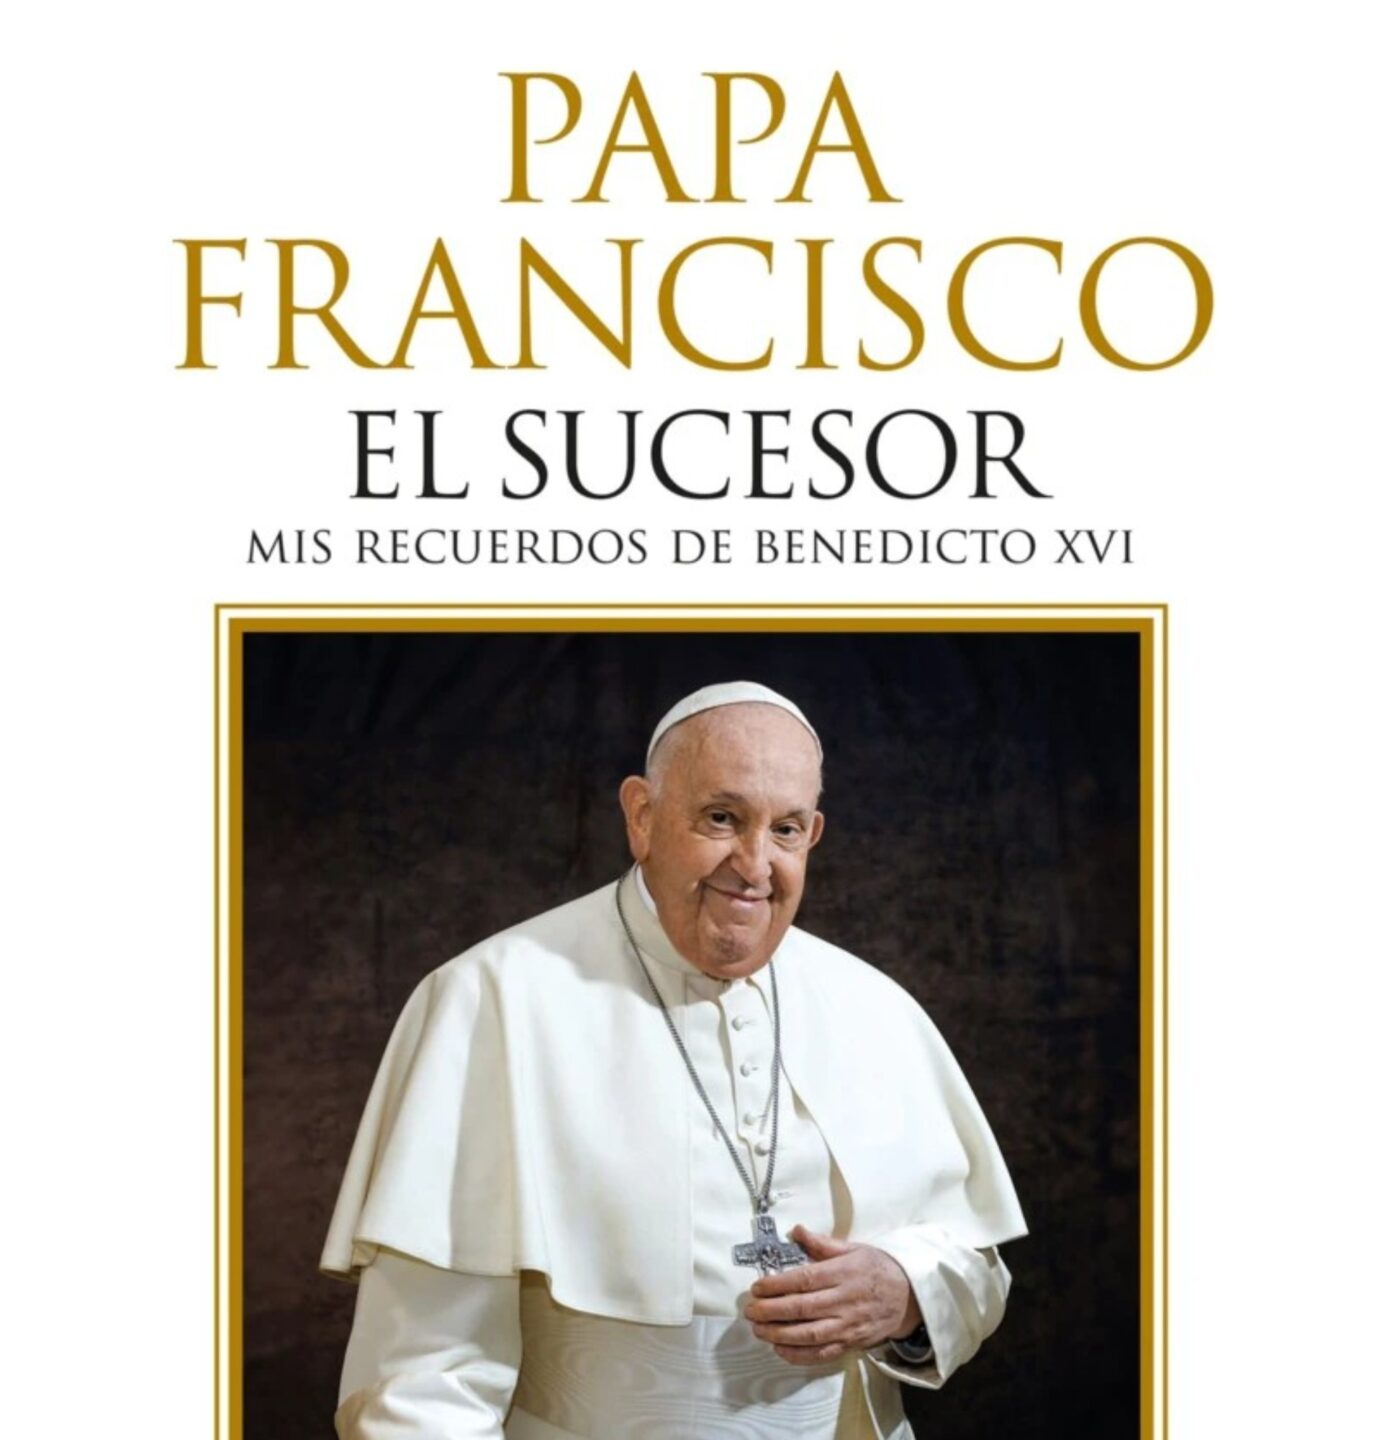 Papa Francisco El sucesor, de Javier Martinez Brocal  